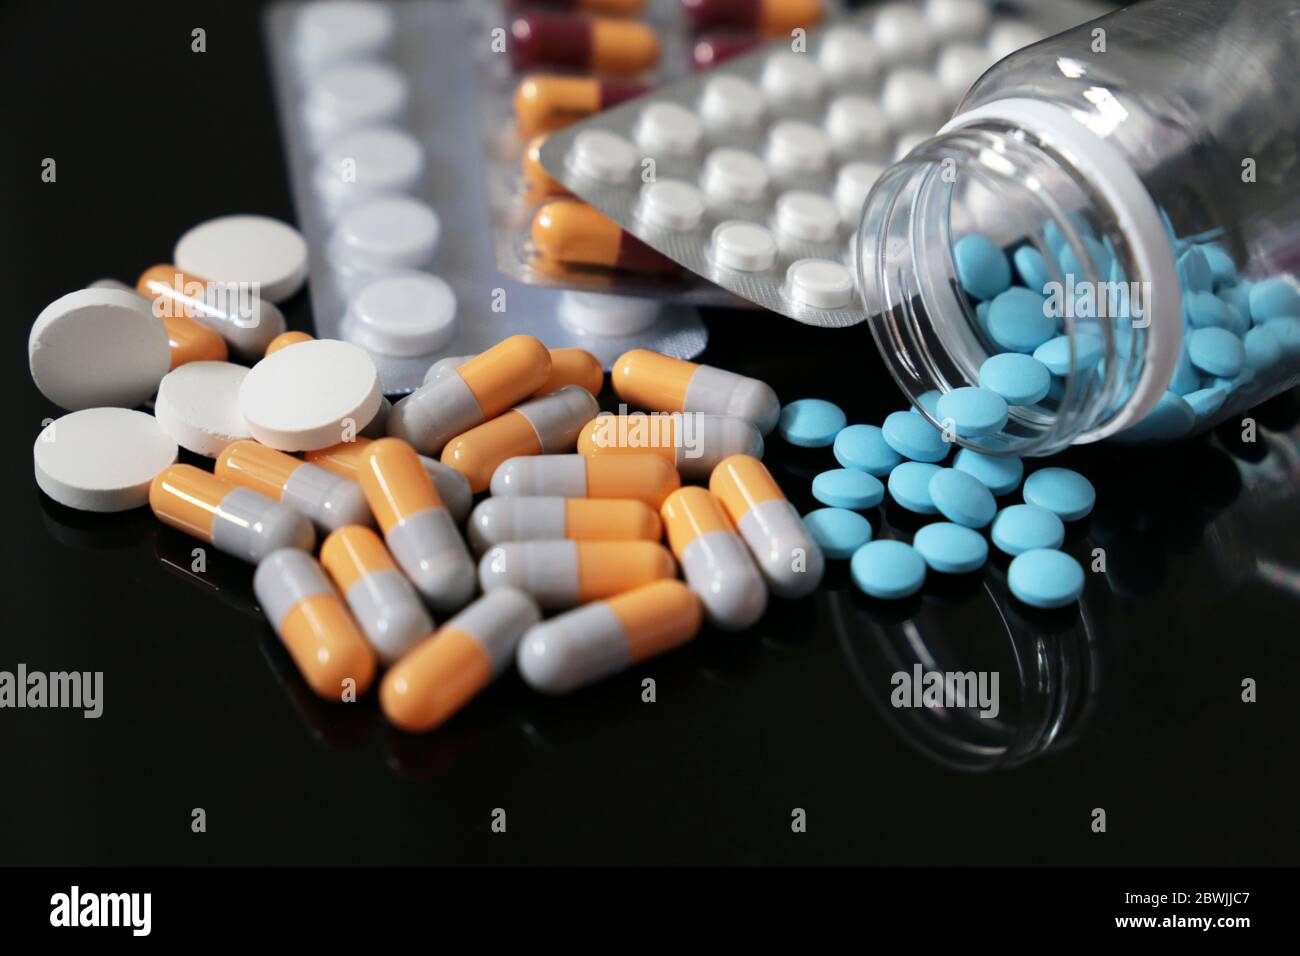 Pilules sur une table en verre foncé, différents médicaments en capsules et comprimés dispersés d'une bouteille. Concept de pharmacie, antibiotiques, vitamines Banque D'Images